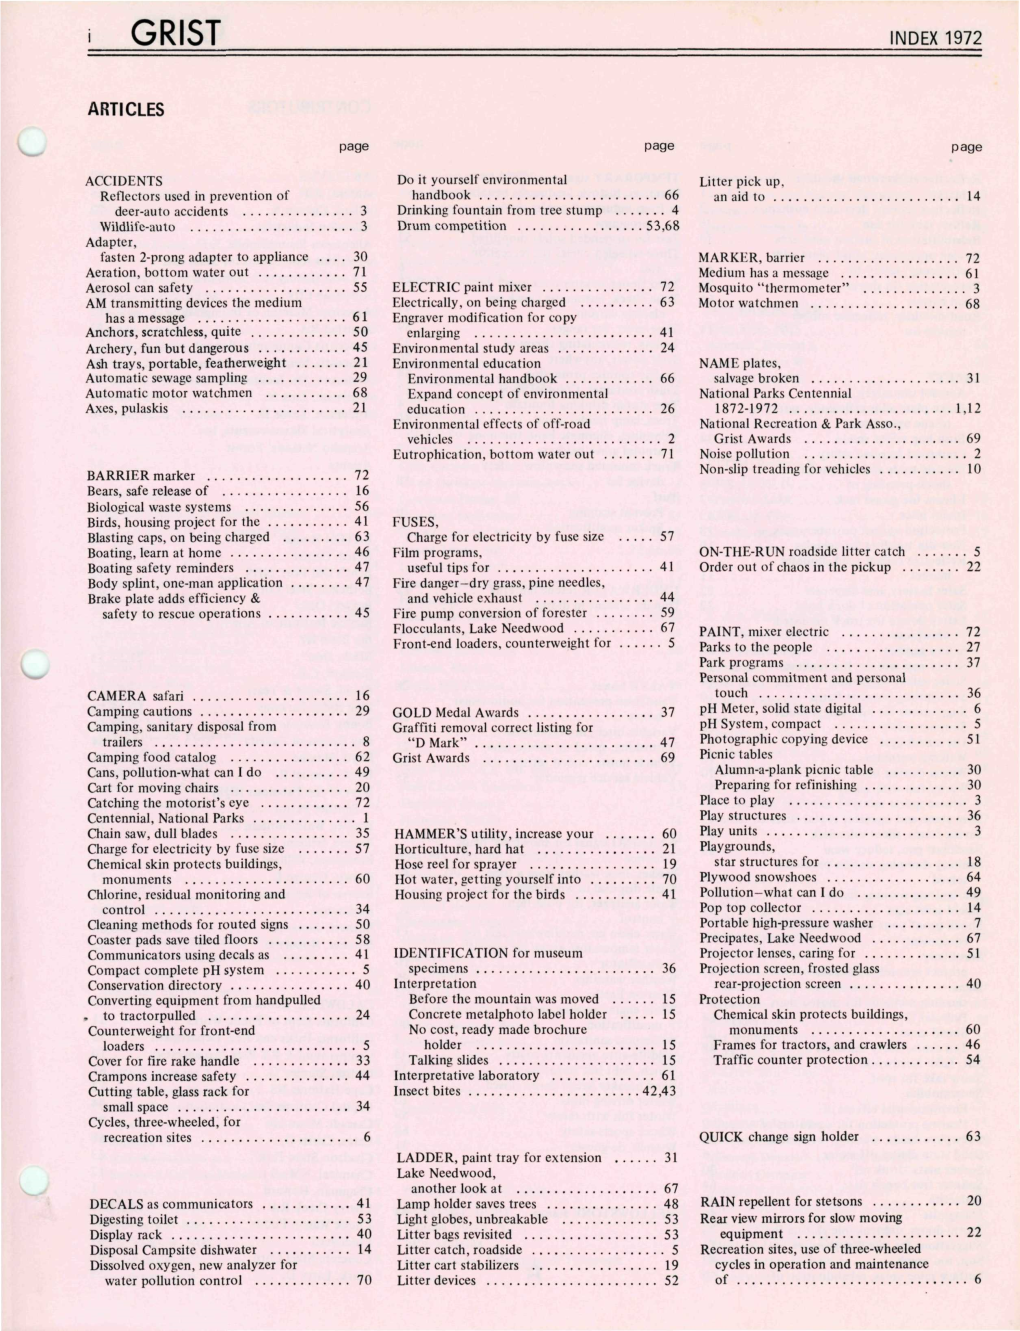 Index 1972 Articles